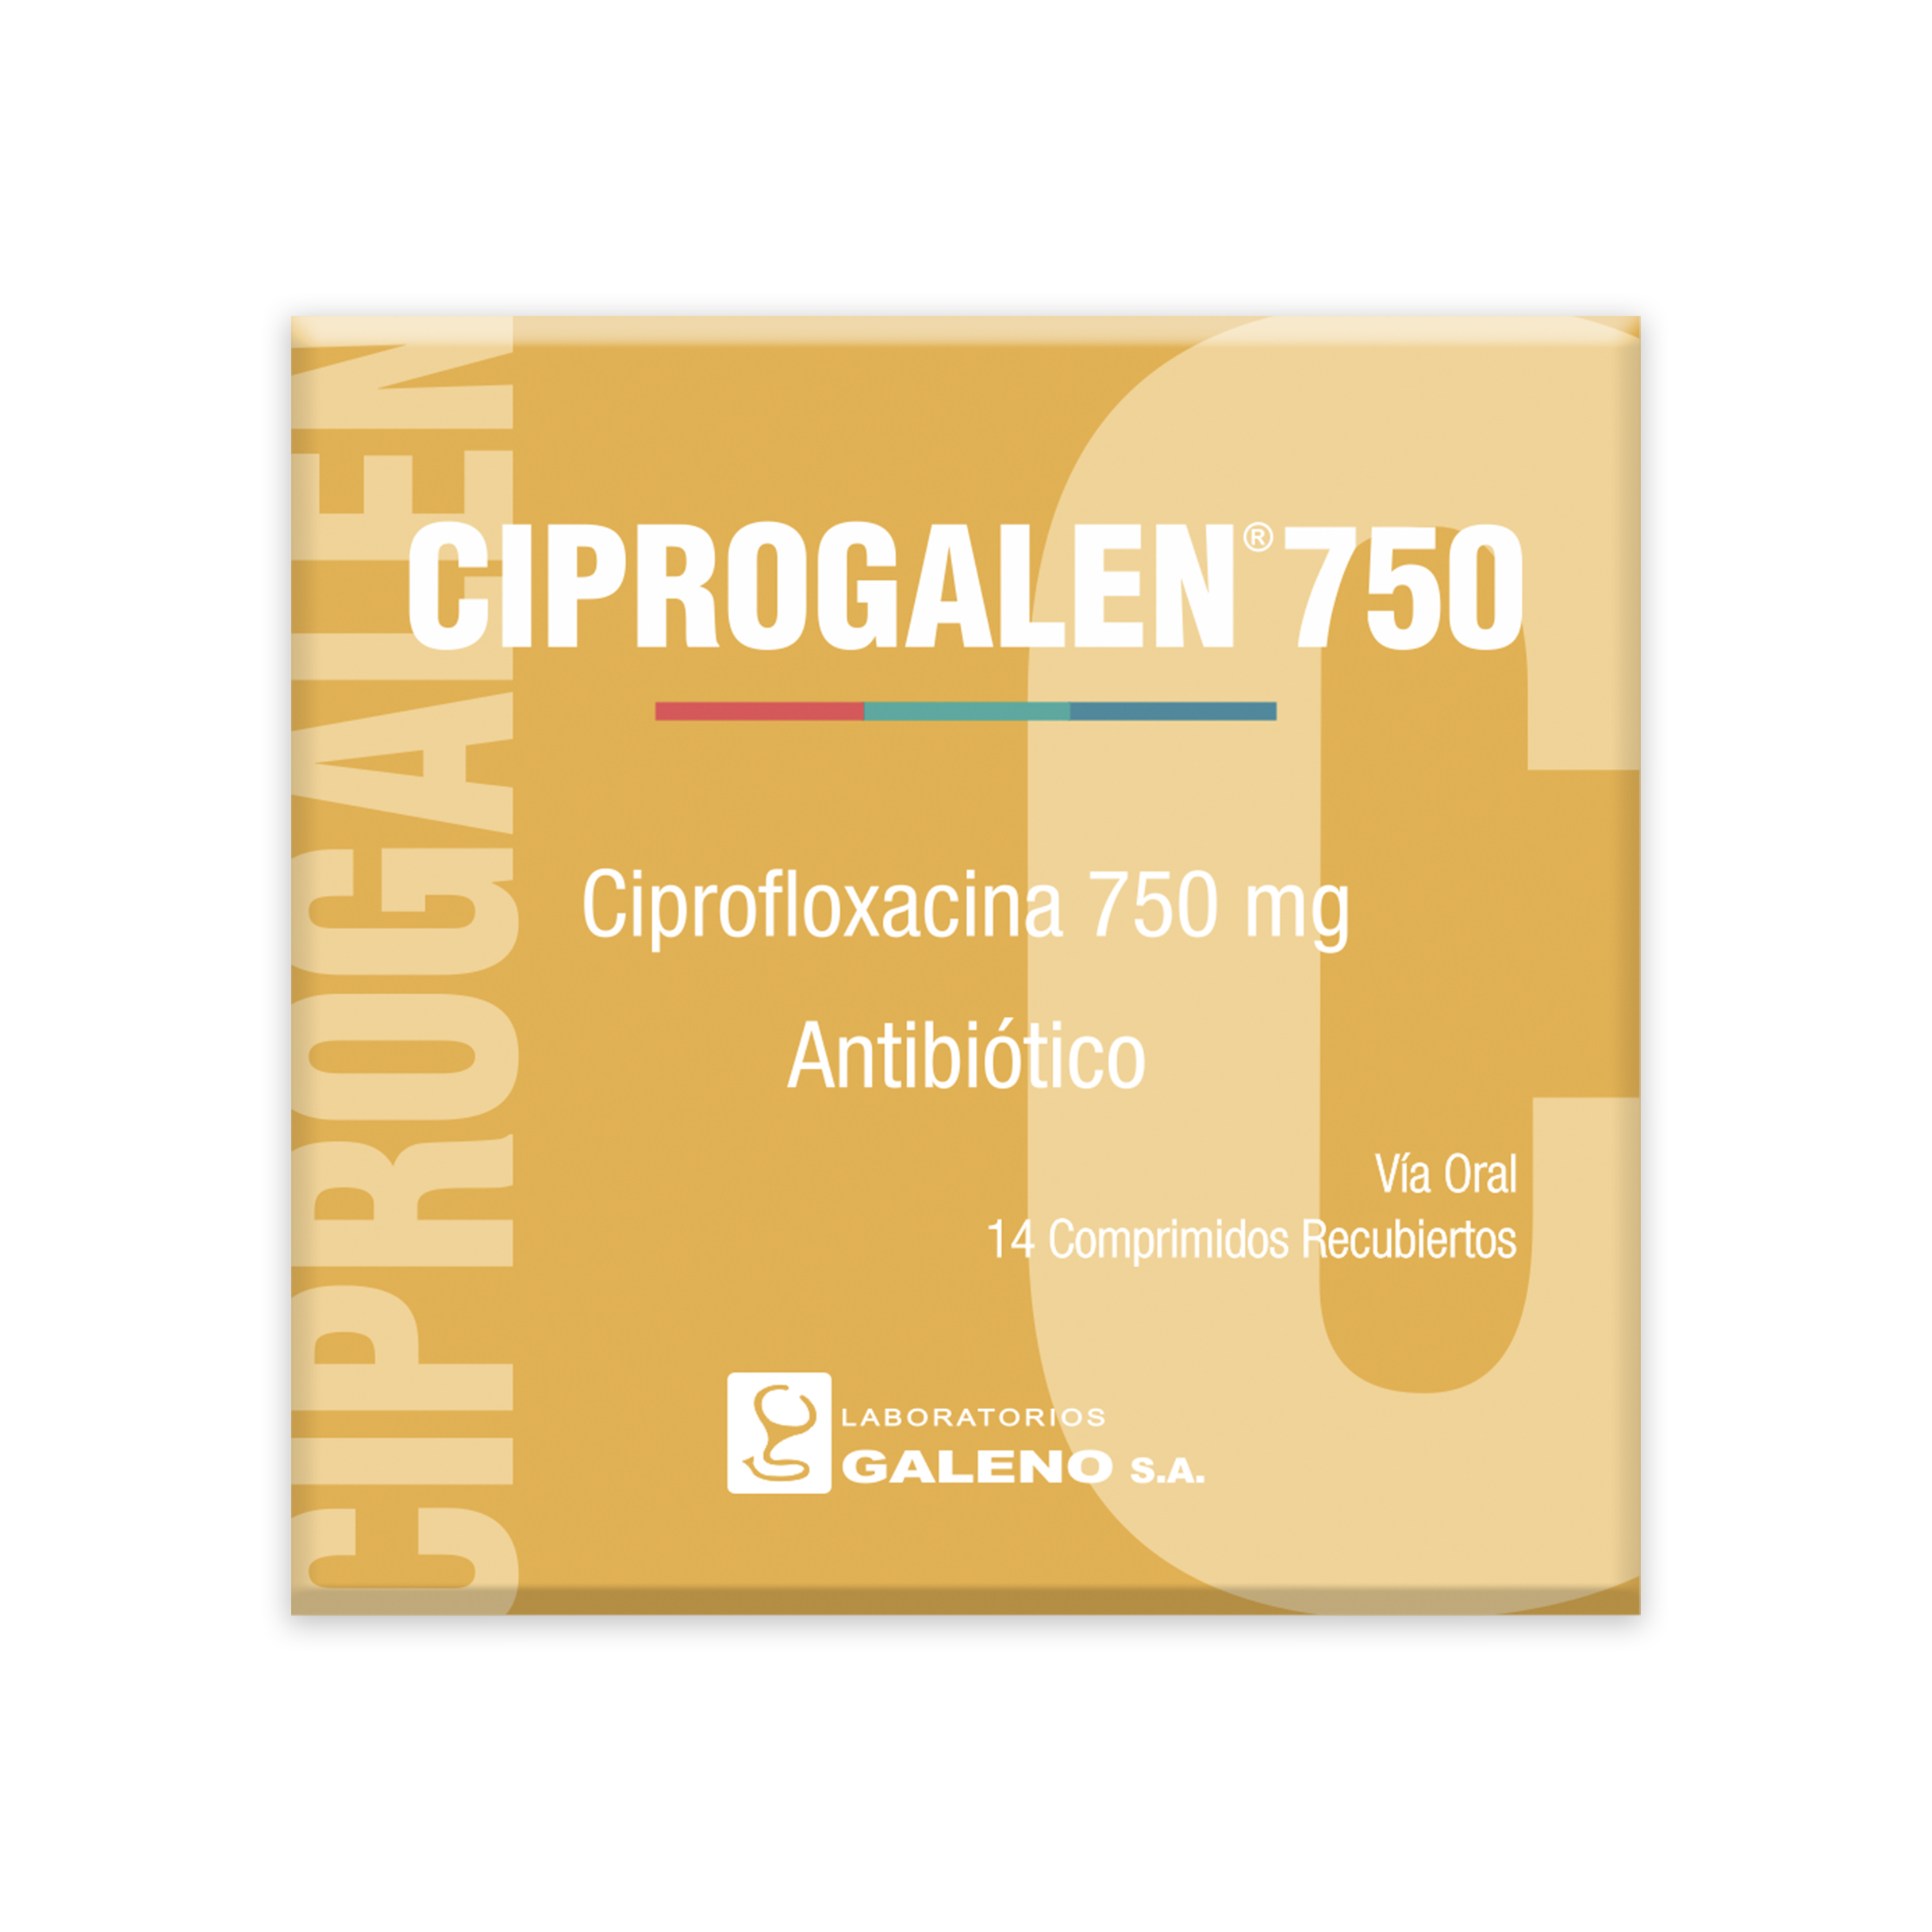 CIPROGALEN 750